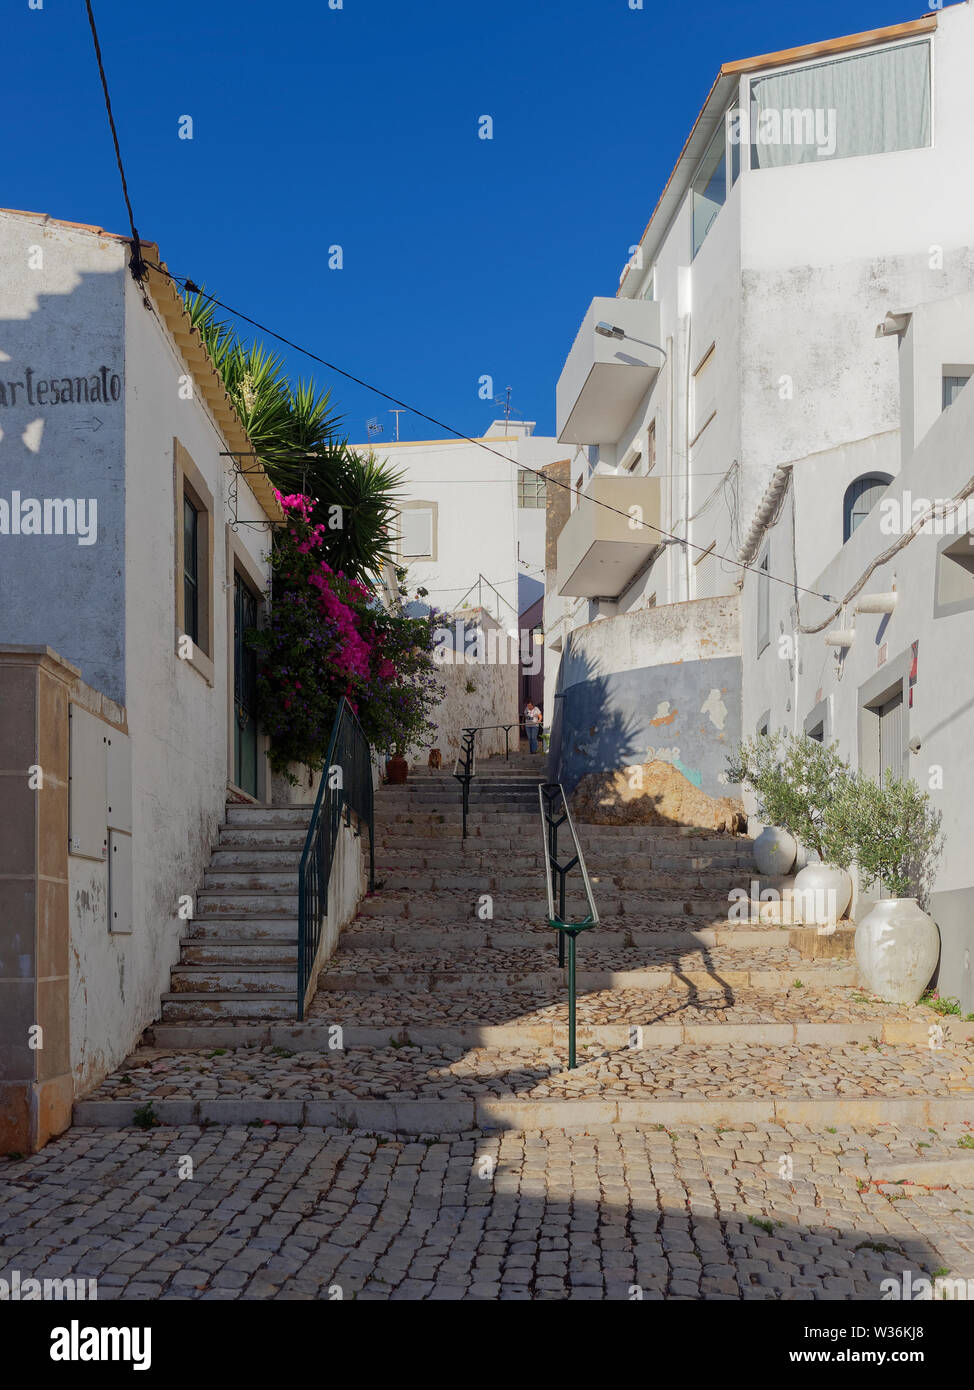 La ricerca di una vecchia strada di ciottoli con gradini in pietra e parapetti con una persona che cammina verso il basso tra le case a schiera. Estoi, Portogallo. Foto Stock